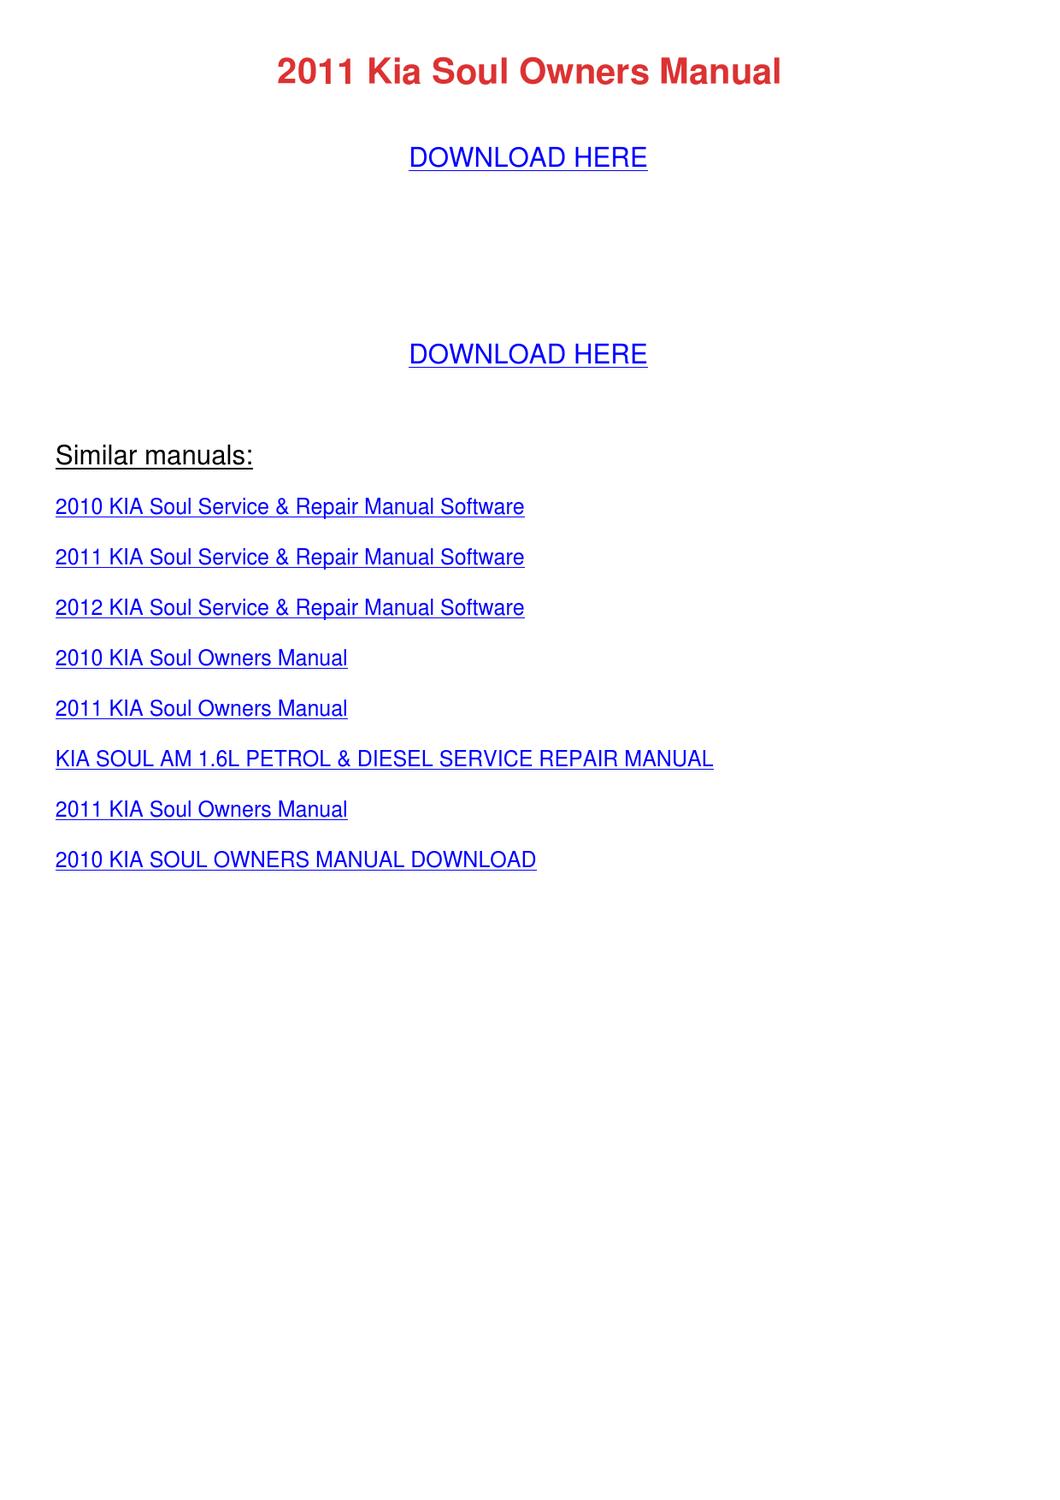 Kia Soul 2012 Repair Manual Download